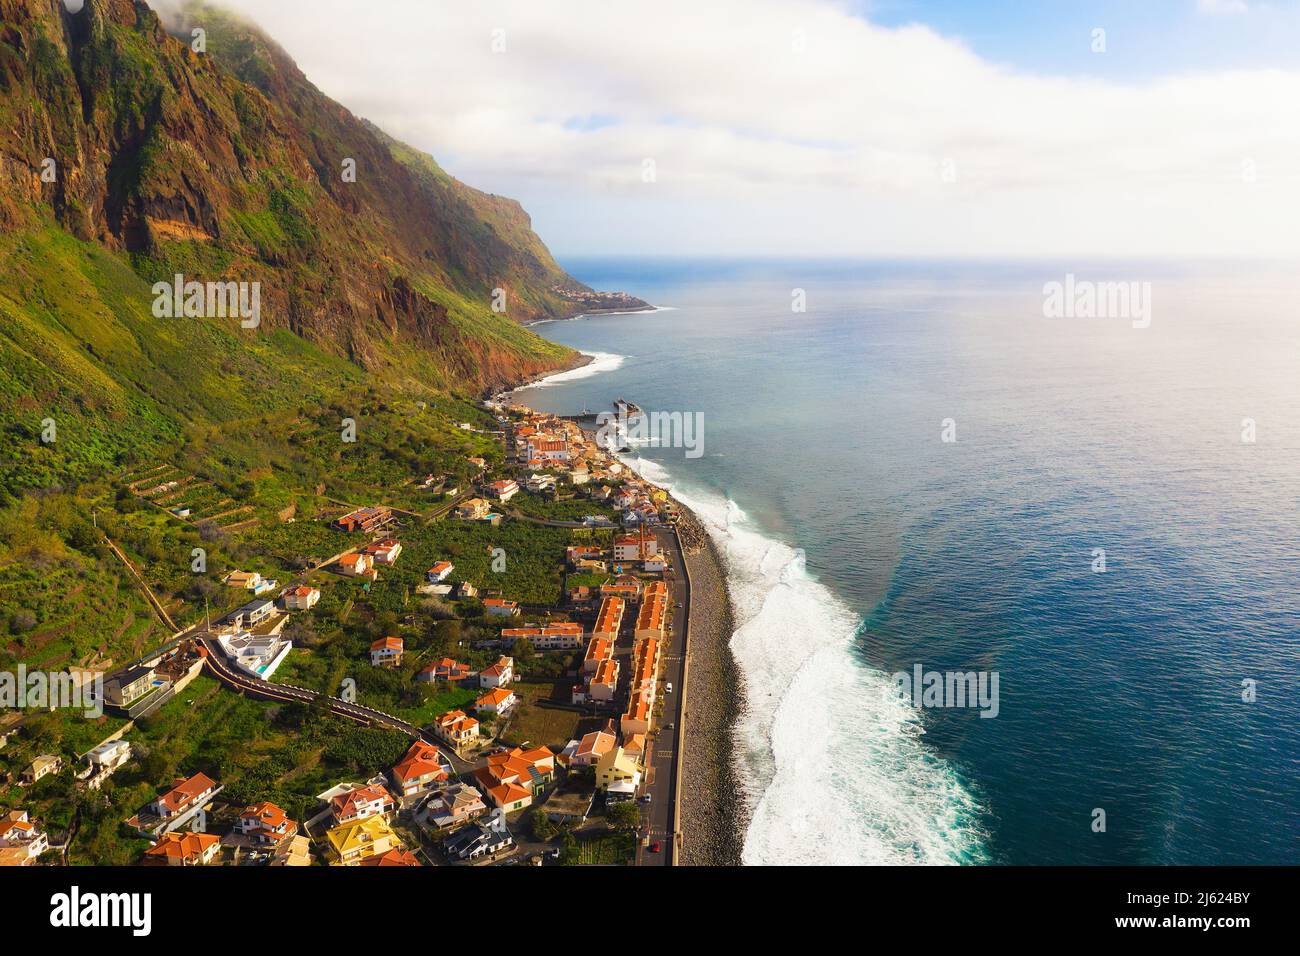 Vista aérea del pueblo costero de Paul do Mar en las Islas Madeira, Portugal Foto de stock